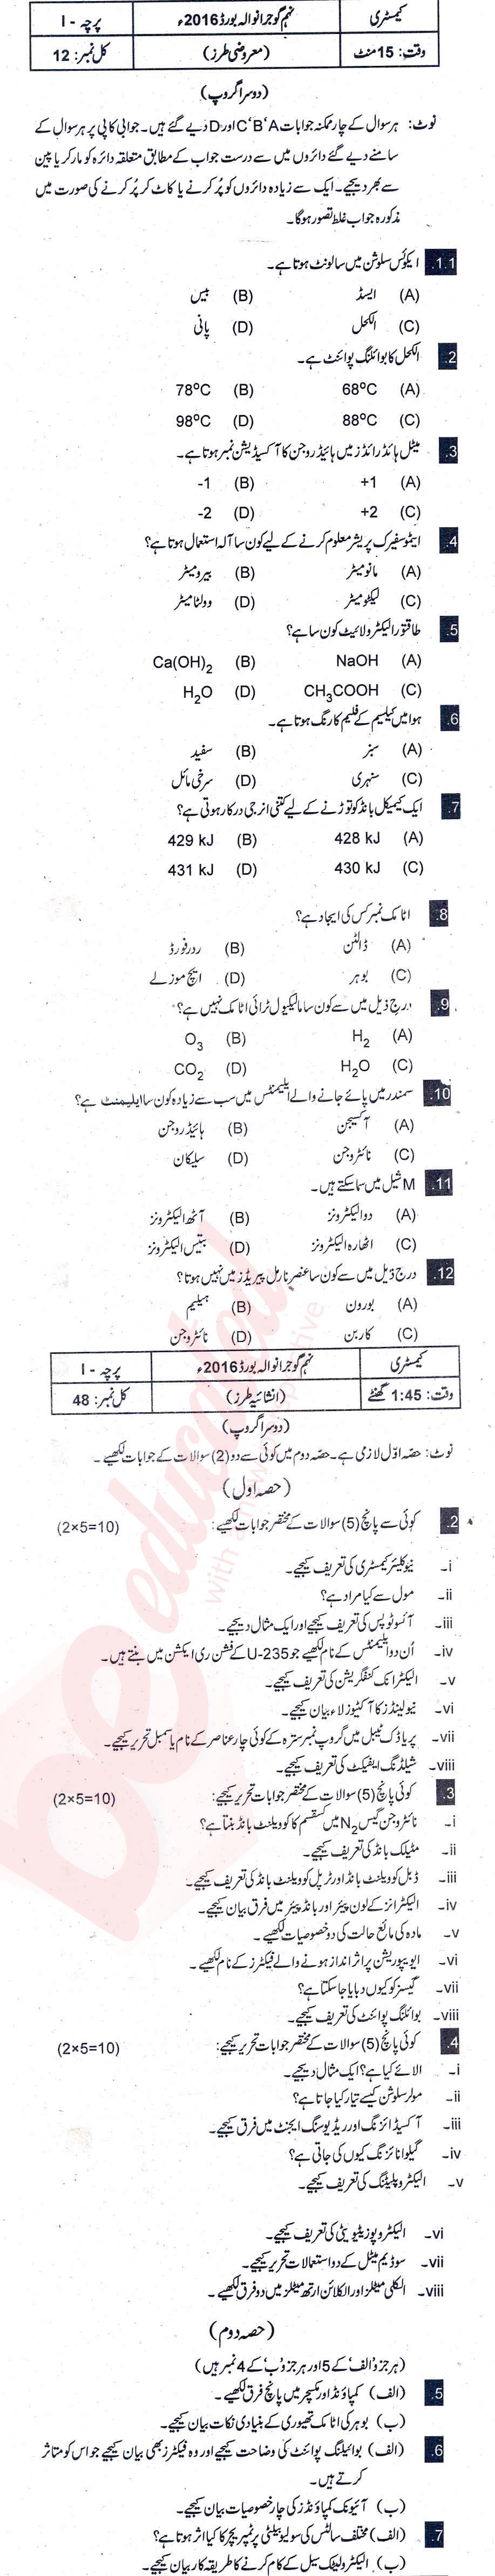 Chemistry 9th Urdu Medium Past Paper Group 2 BISE Gujranwala 2016